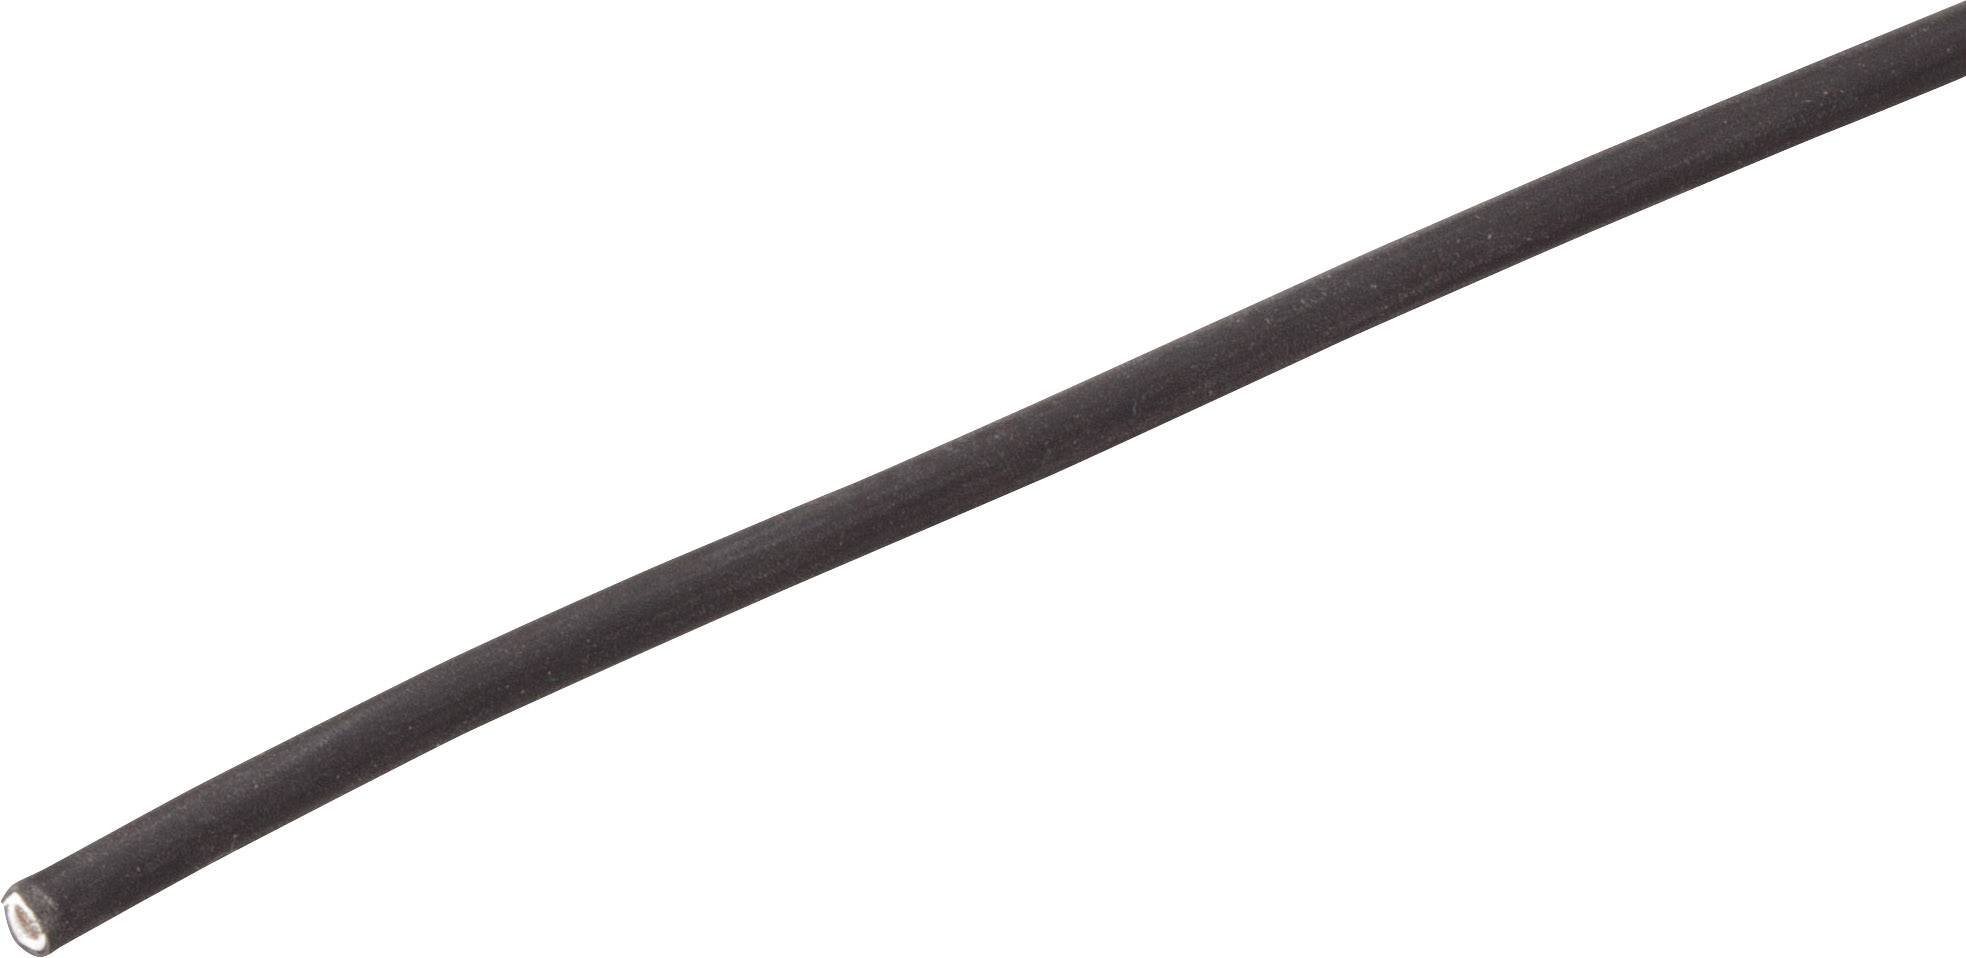 RADOX 155 Kabel, 16mm2, flexibel, orange – Hoelzle